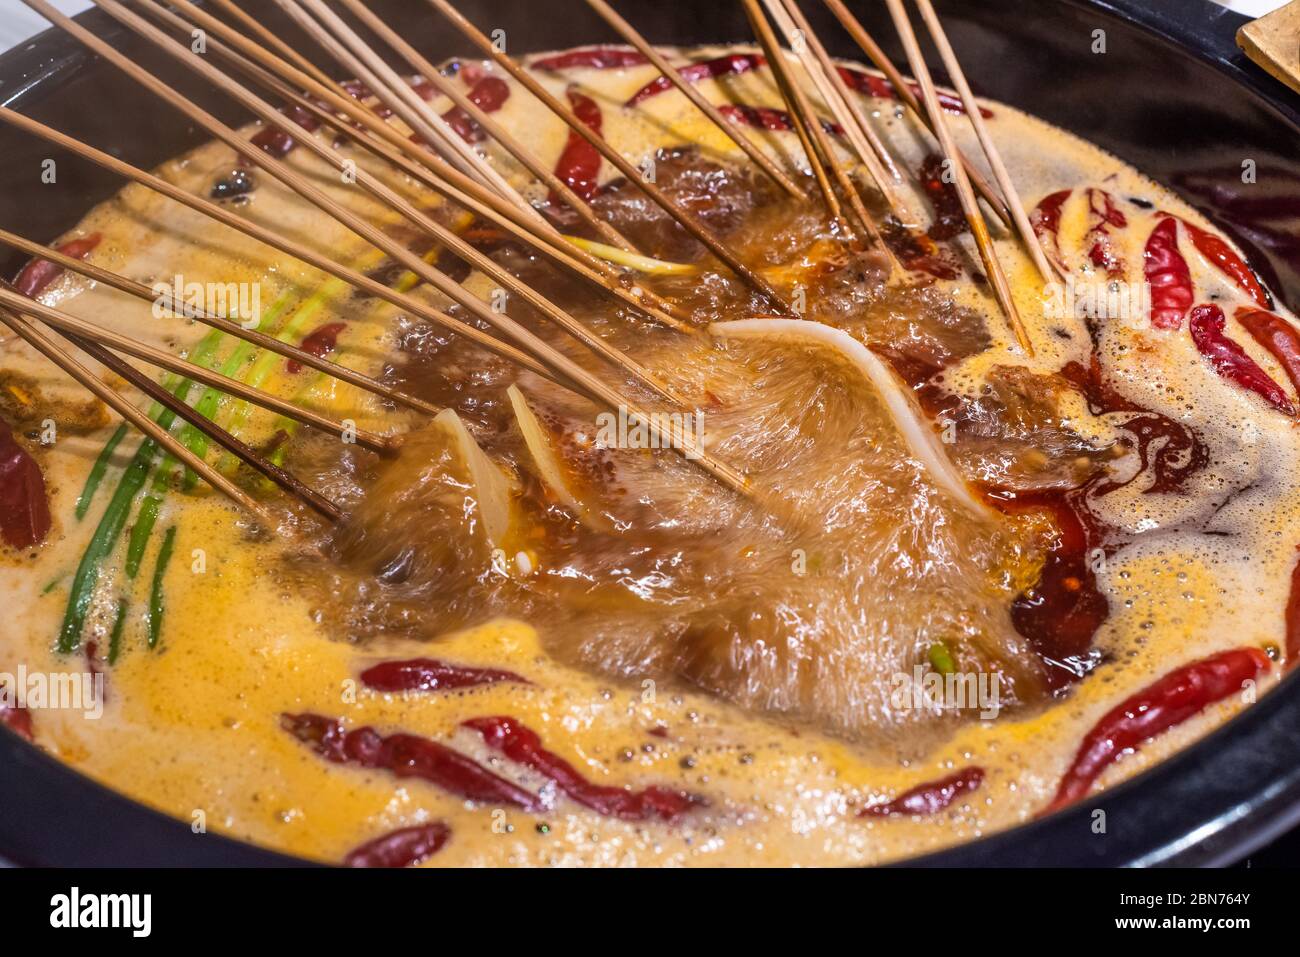 Fondue chinoise sichuanaise (Hot Pot) - Hop dans le wok